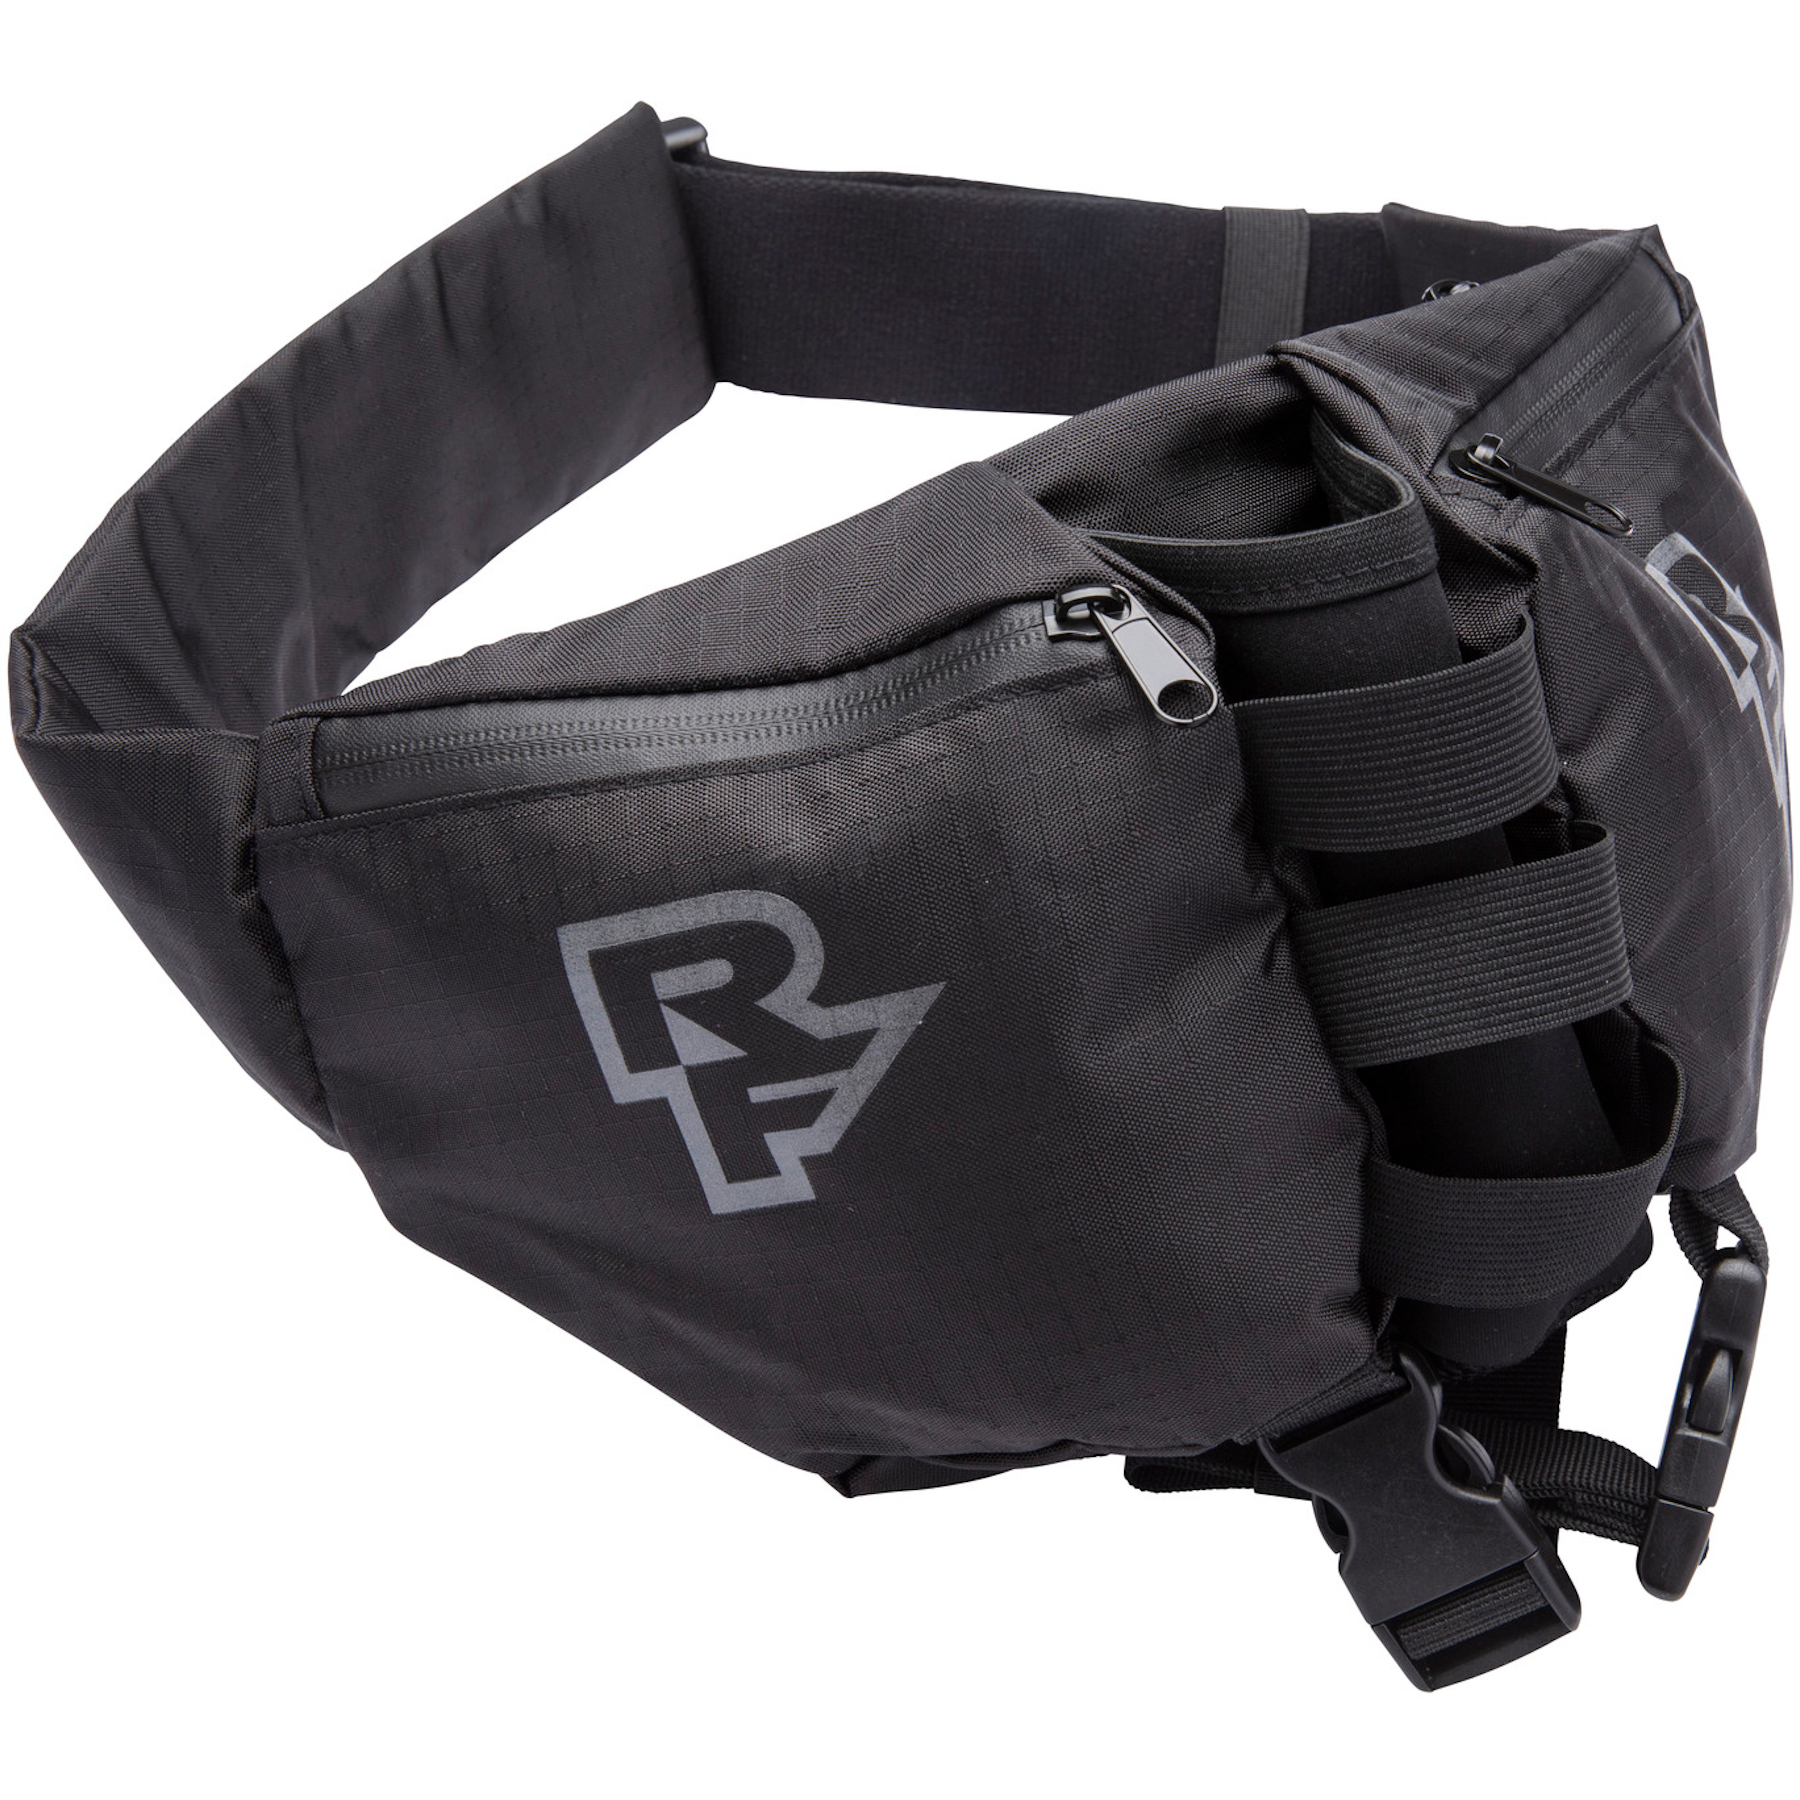 Produktbild von Race Face Stash Quick Rip Bag Hüfttasche - black